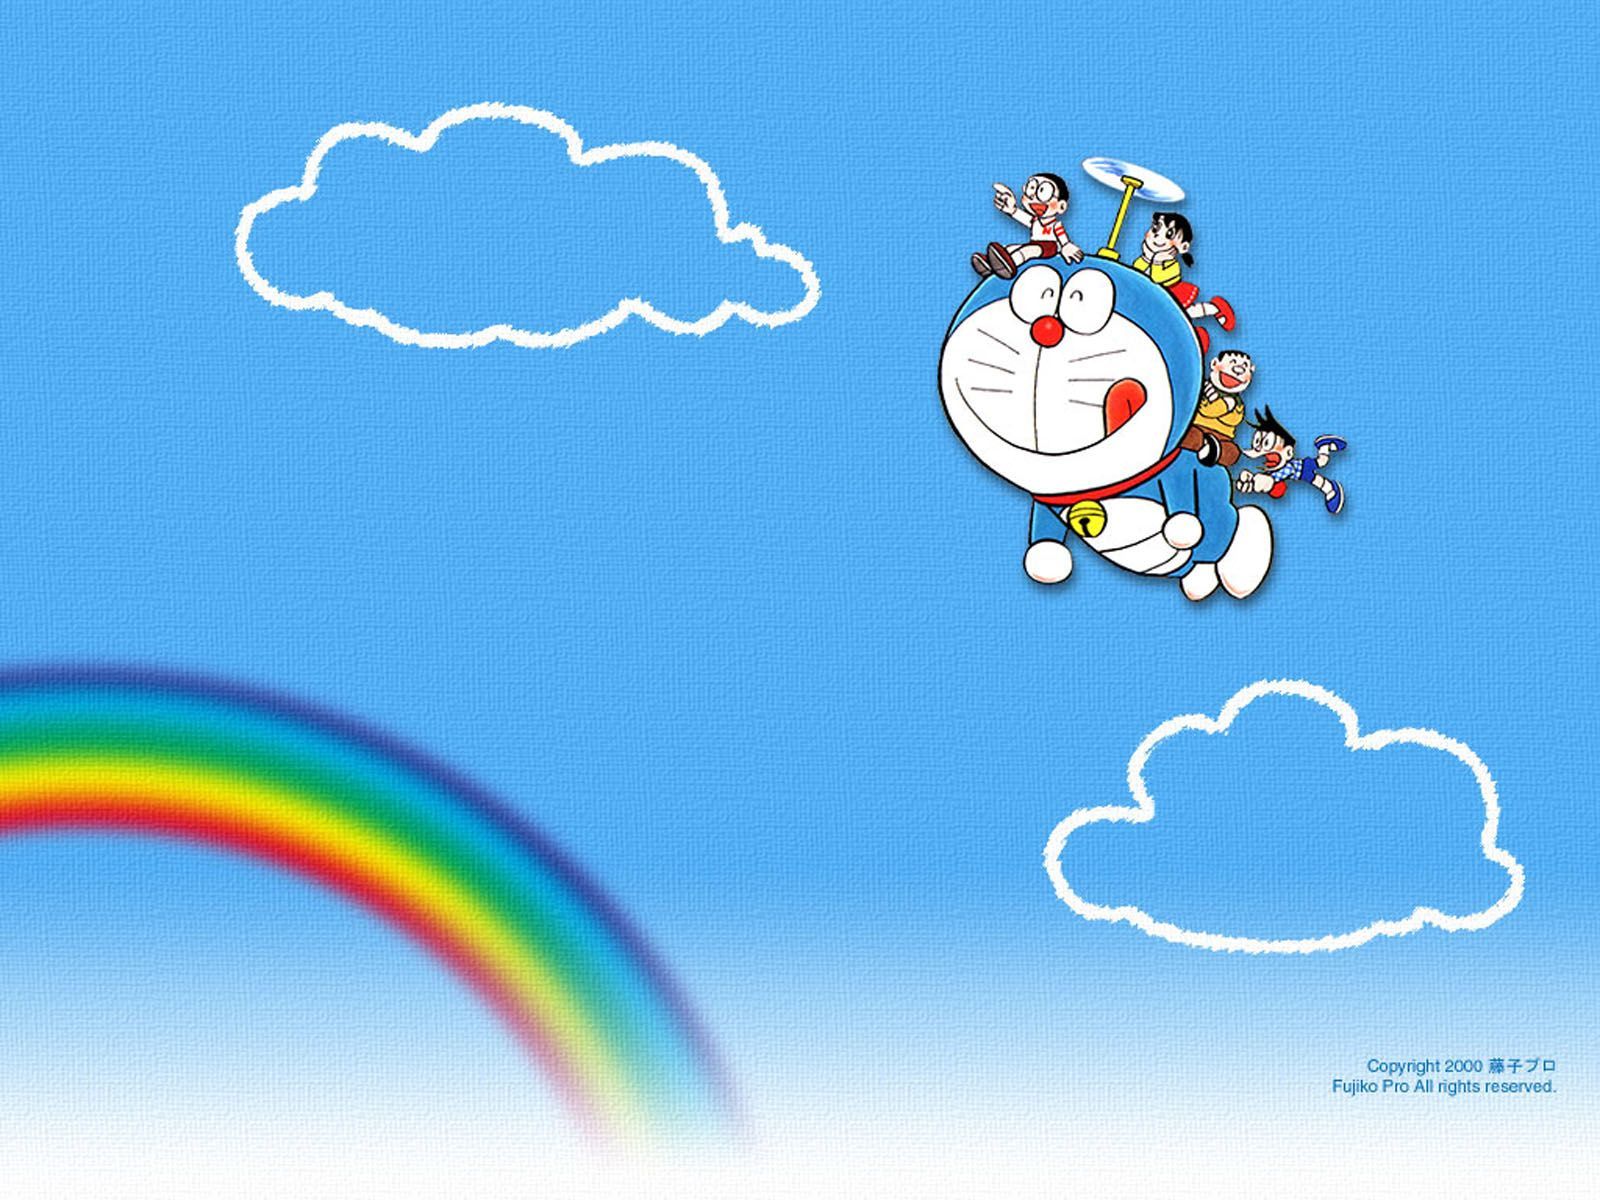 ドラえもん 壁紙 Doraemon Wallpaper (Có hình ảnh). Doraemon, Hình nền, Đang yêu